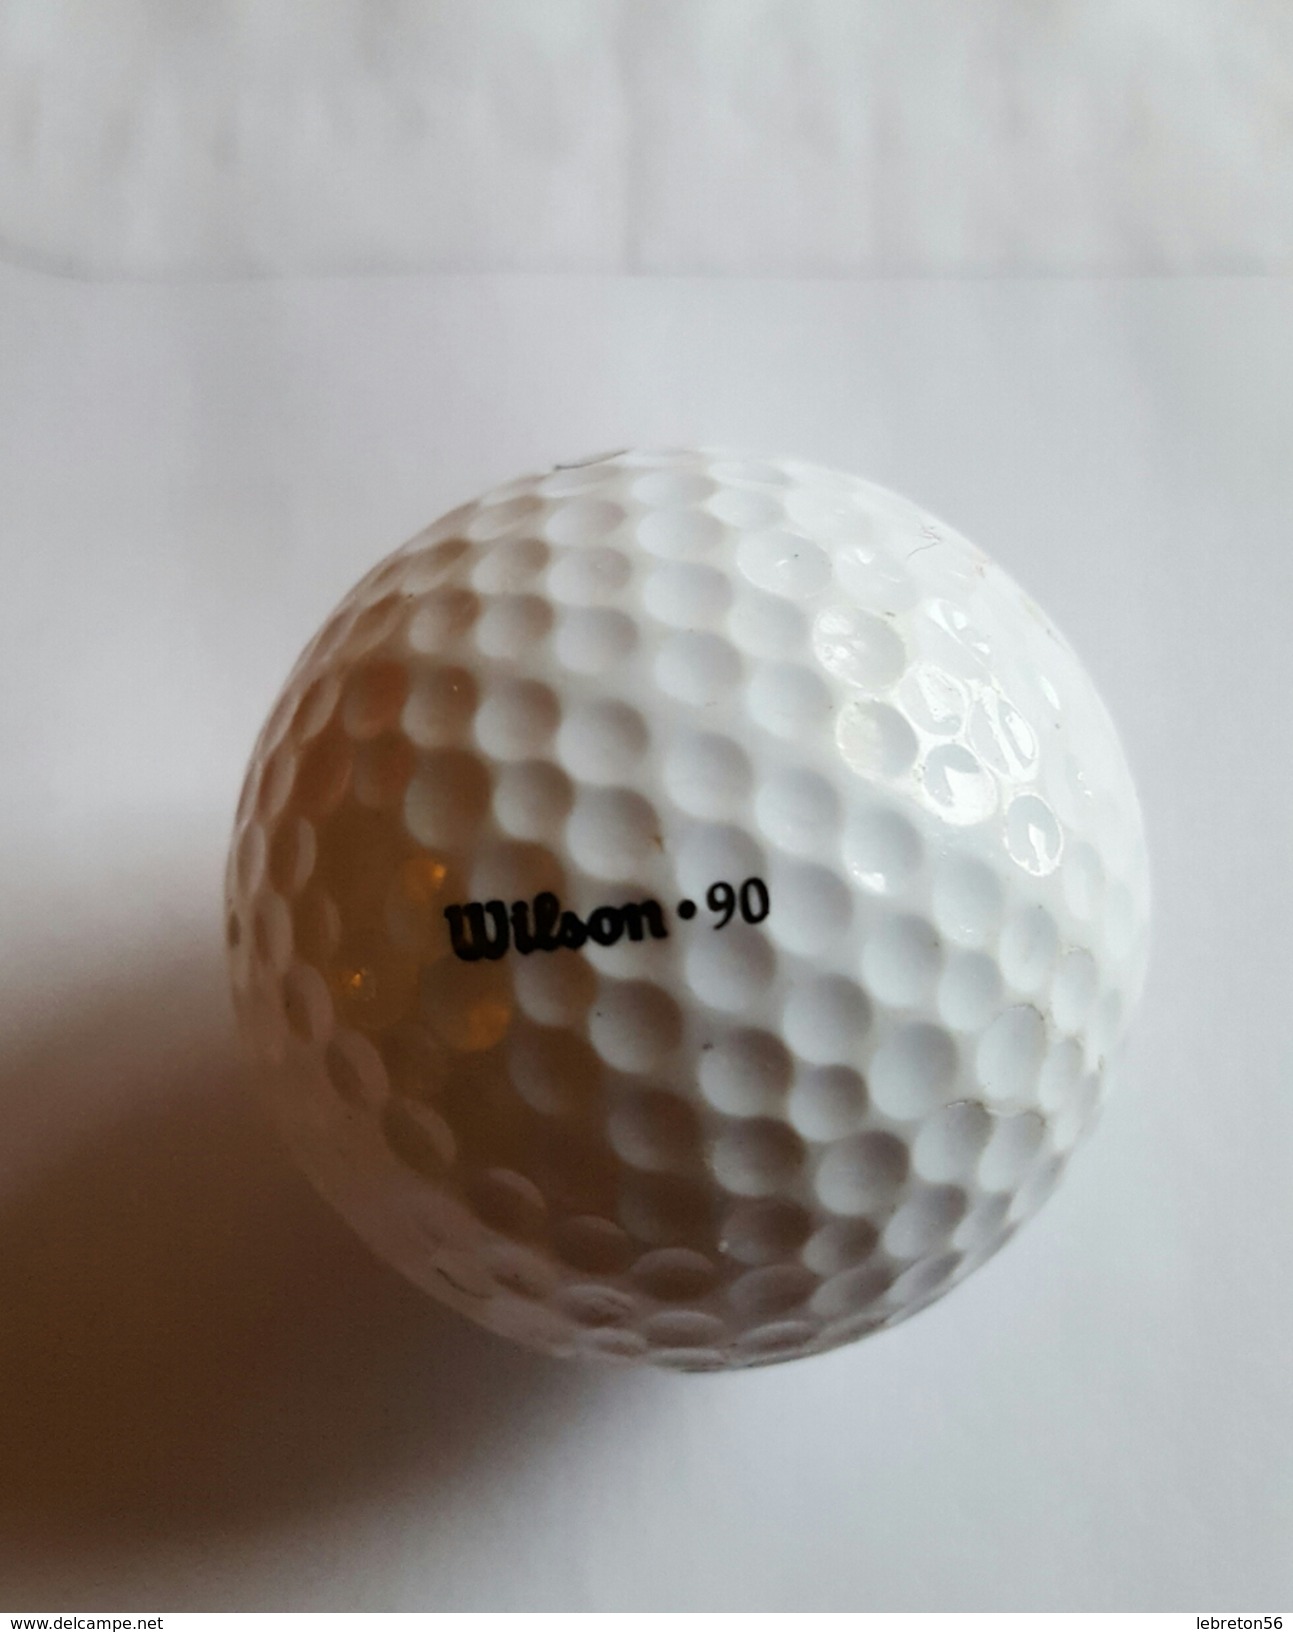 Joli 1 Balle De Golf Collection ULTRA 3 Wilson.90 - Apparel, Souvenirs & Other